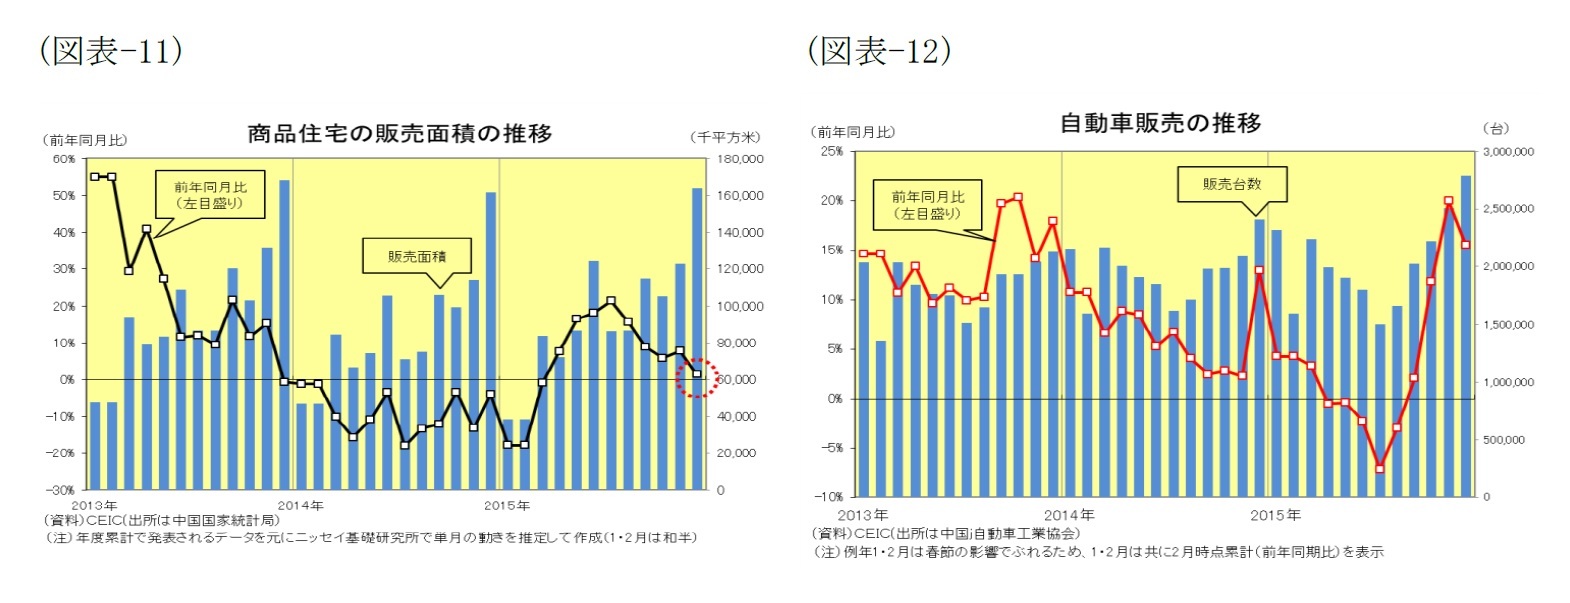 (図表11)商品住宅の販売面積の推移/(図表12)自動車販売の推移